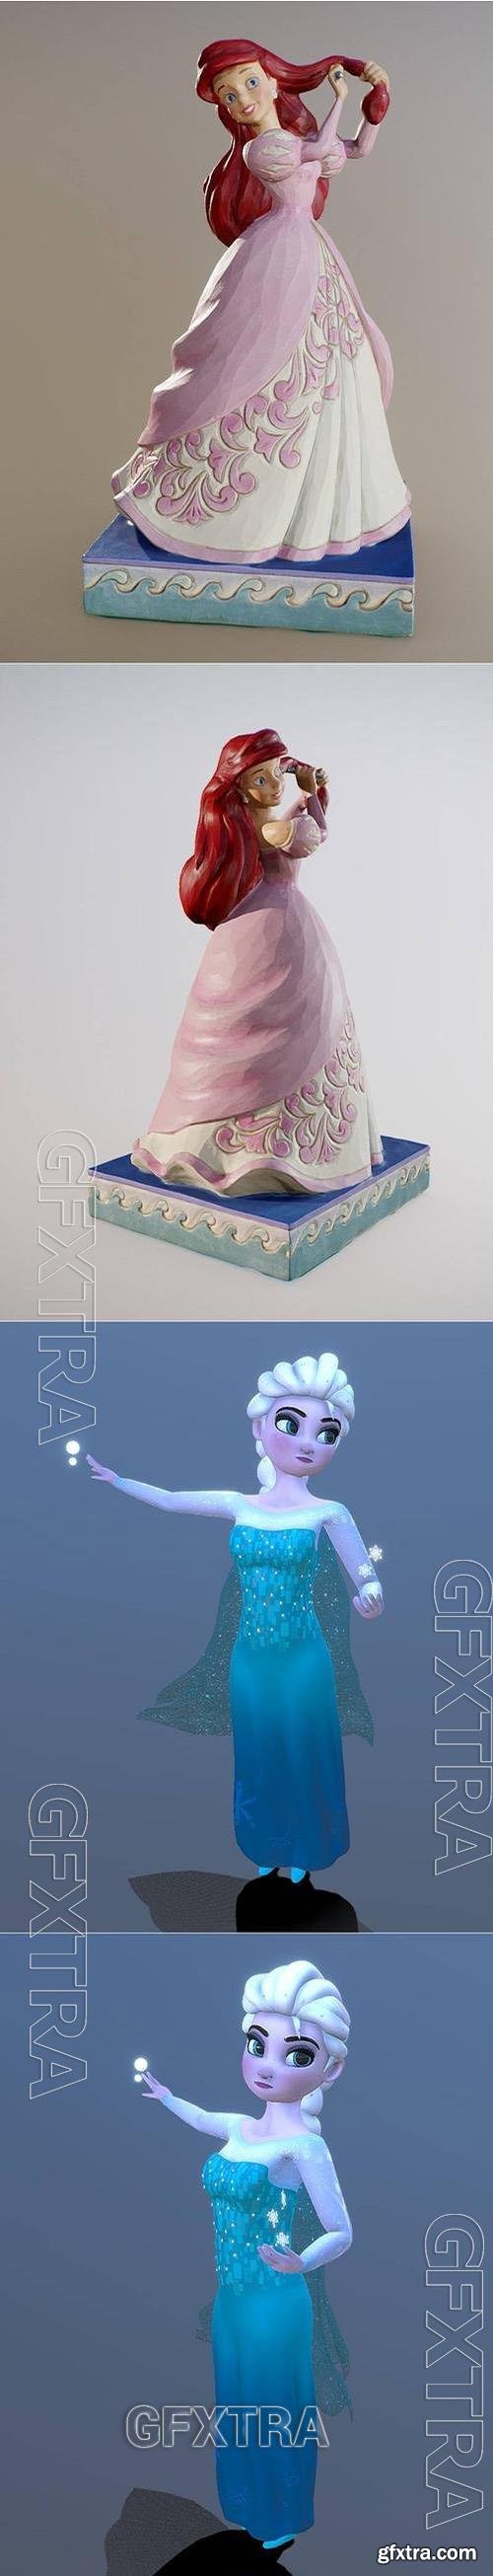 Princess Passion Ariel and Disney Frozen-Queen Elsa and Frozen Elsa 3D